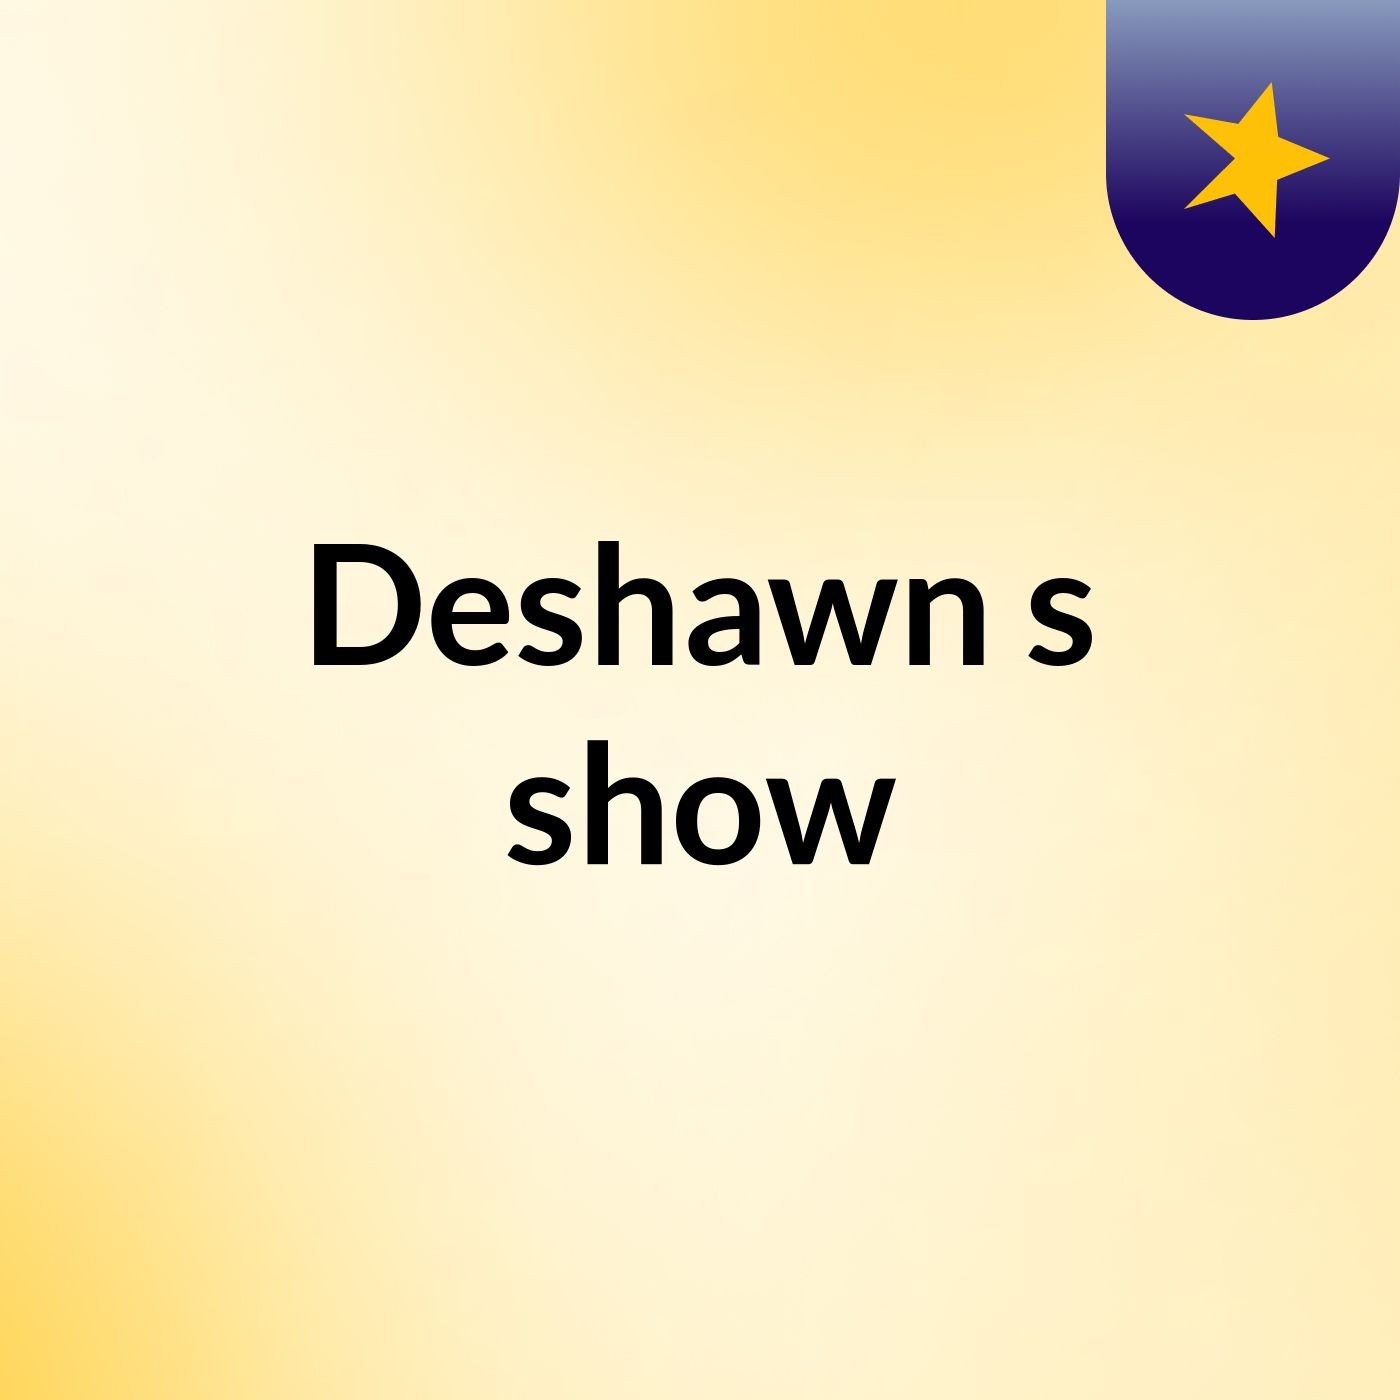 Episode 7 - Deshawn's show